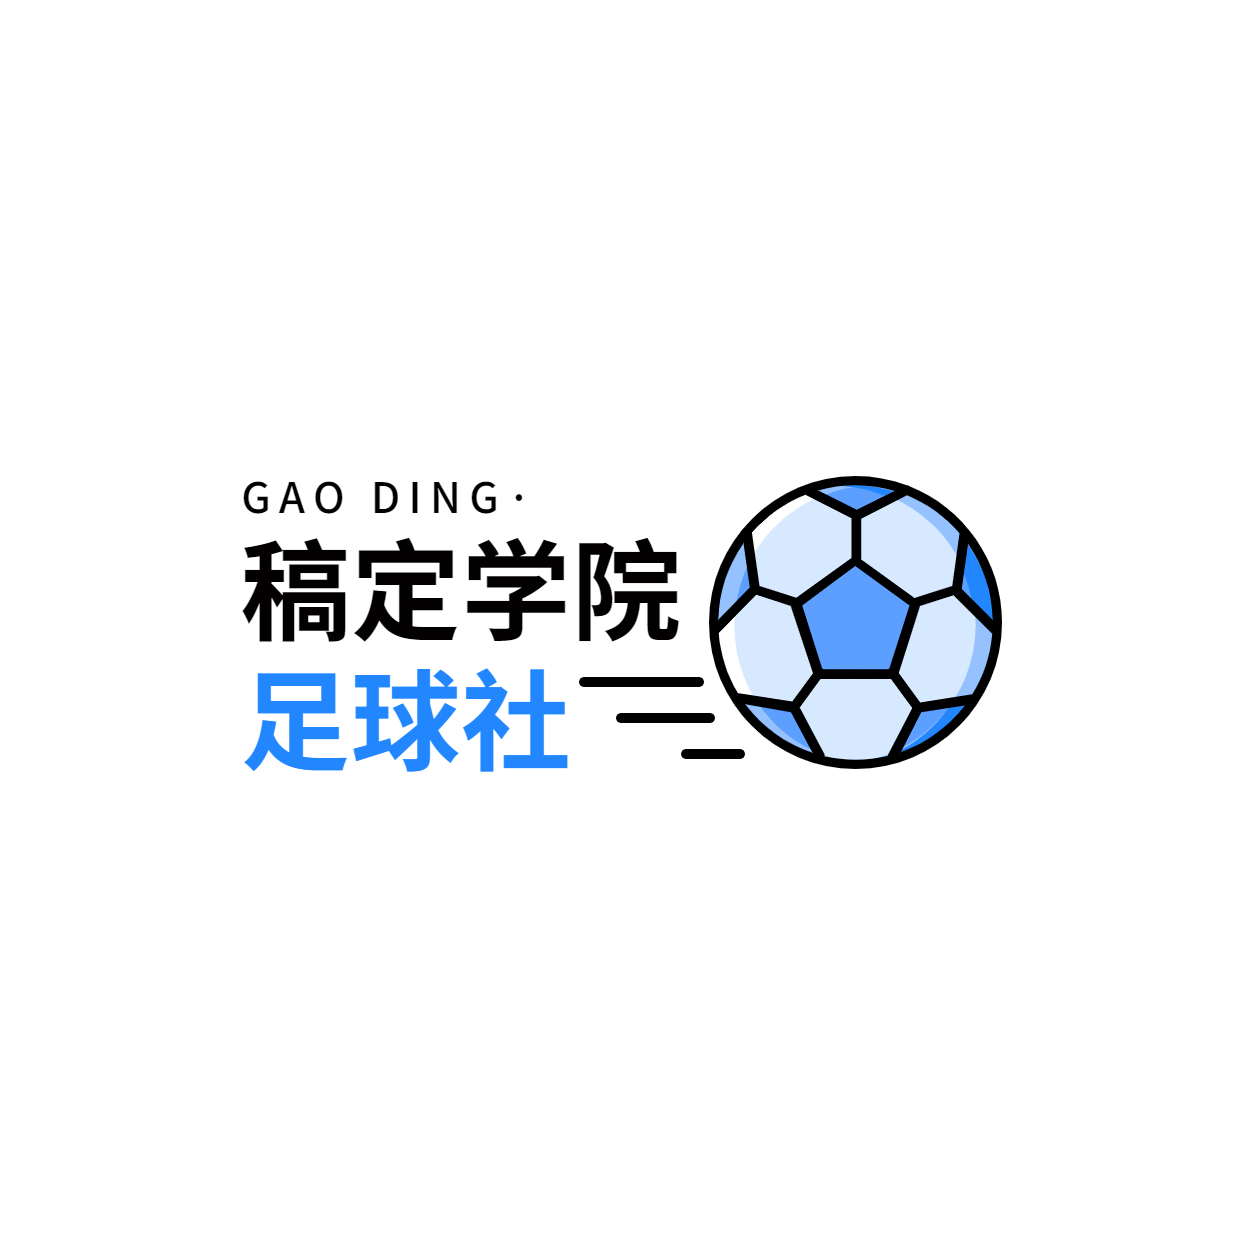 教育培训足球社简约清新logo预览效果